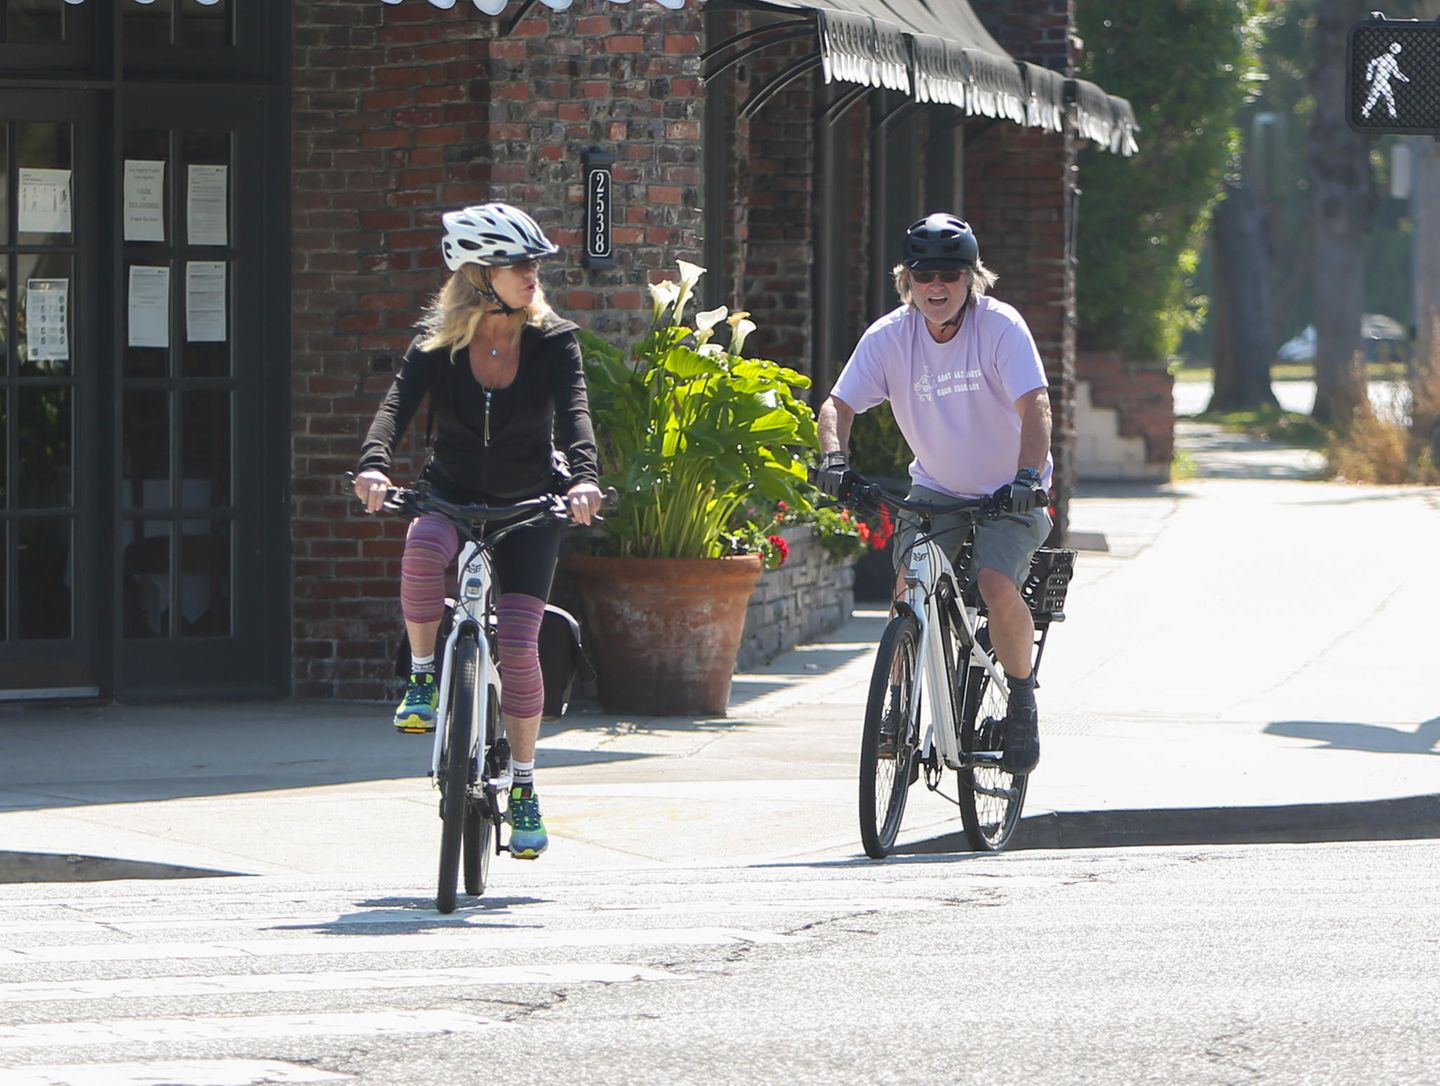 Die autoleeren Straßen in Zeiten der Pandemie sind ein Traum für begeisterte Radfahrer. Auch Goldie Hawn und Gatte Kurt Russell nutzen das sonnige Wetter für eine gemeinsame Tour durch Los Angeles.